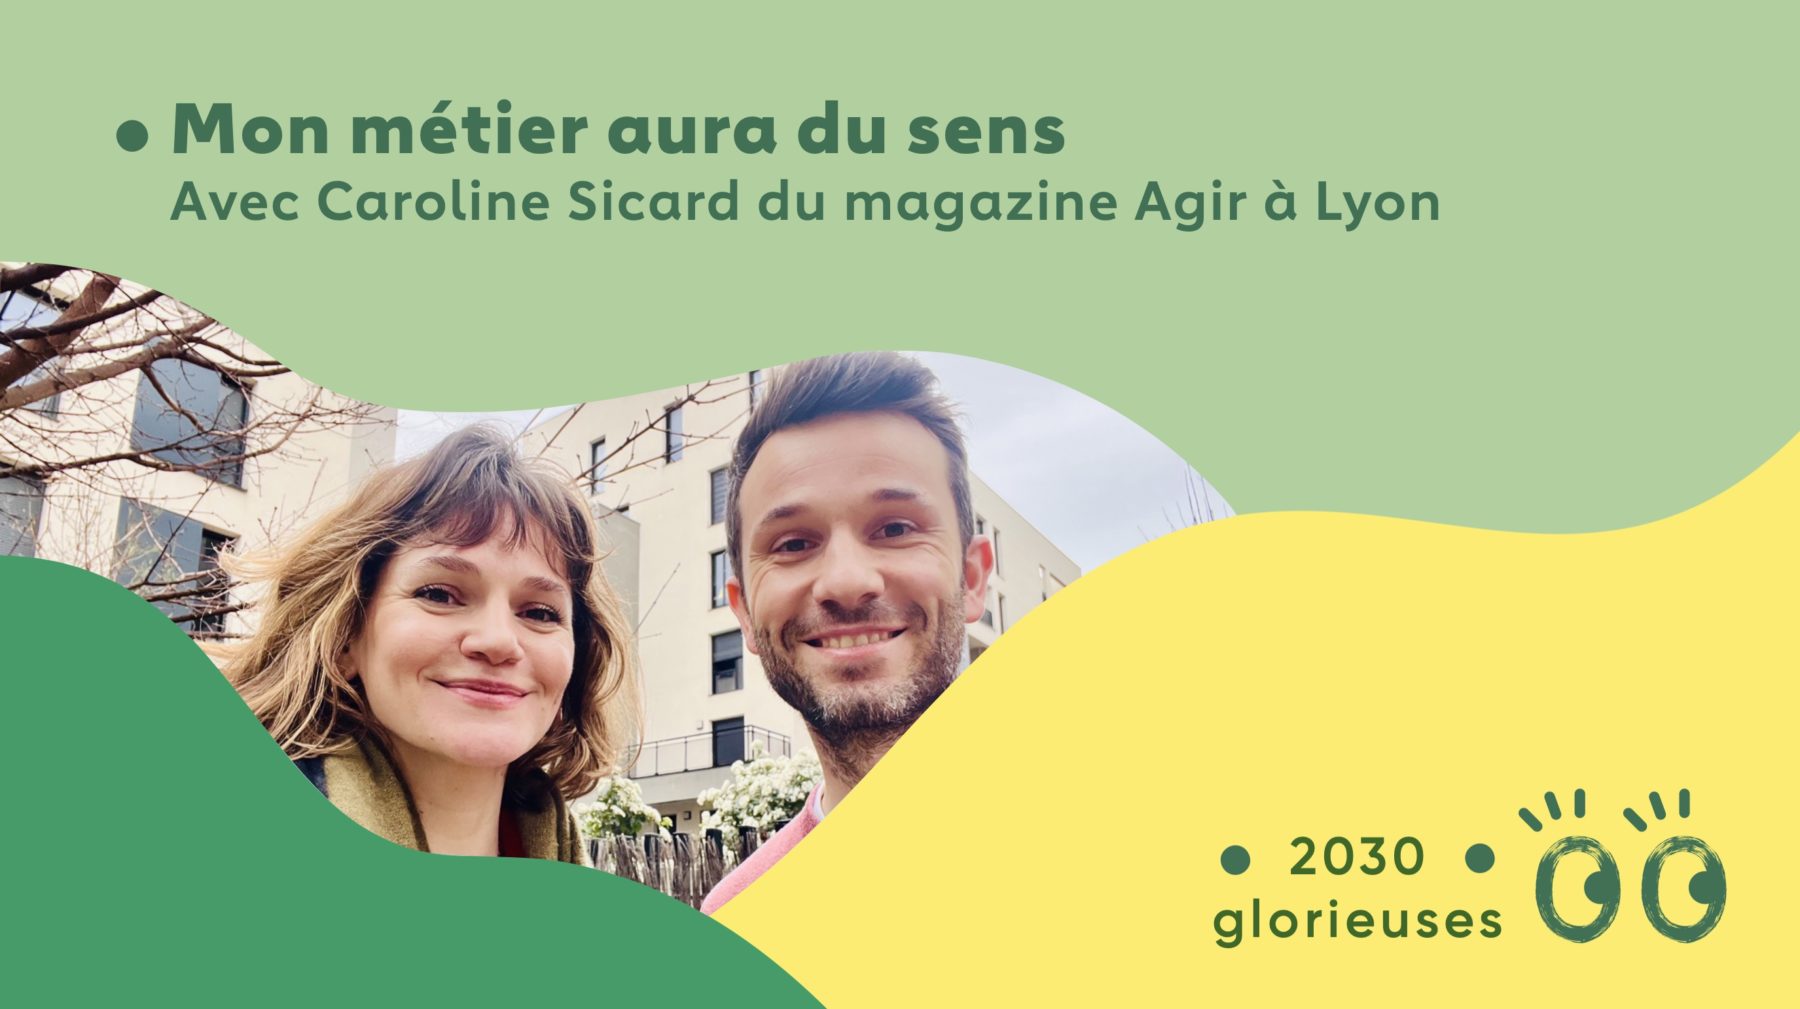 2030 Glorieuses #111 : Caroline Sicard et Julien Vidal : “Mon métier aura du sens."